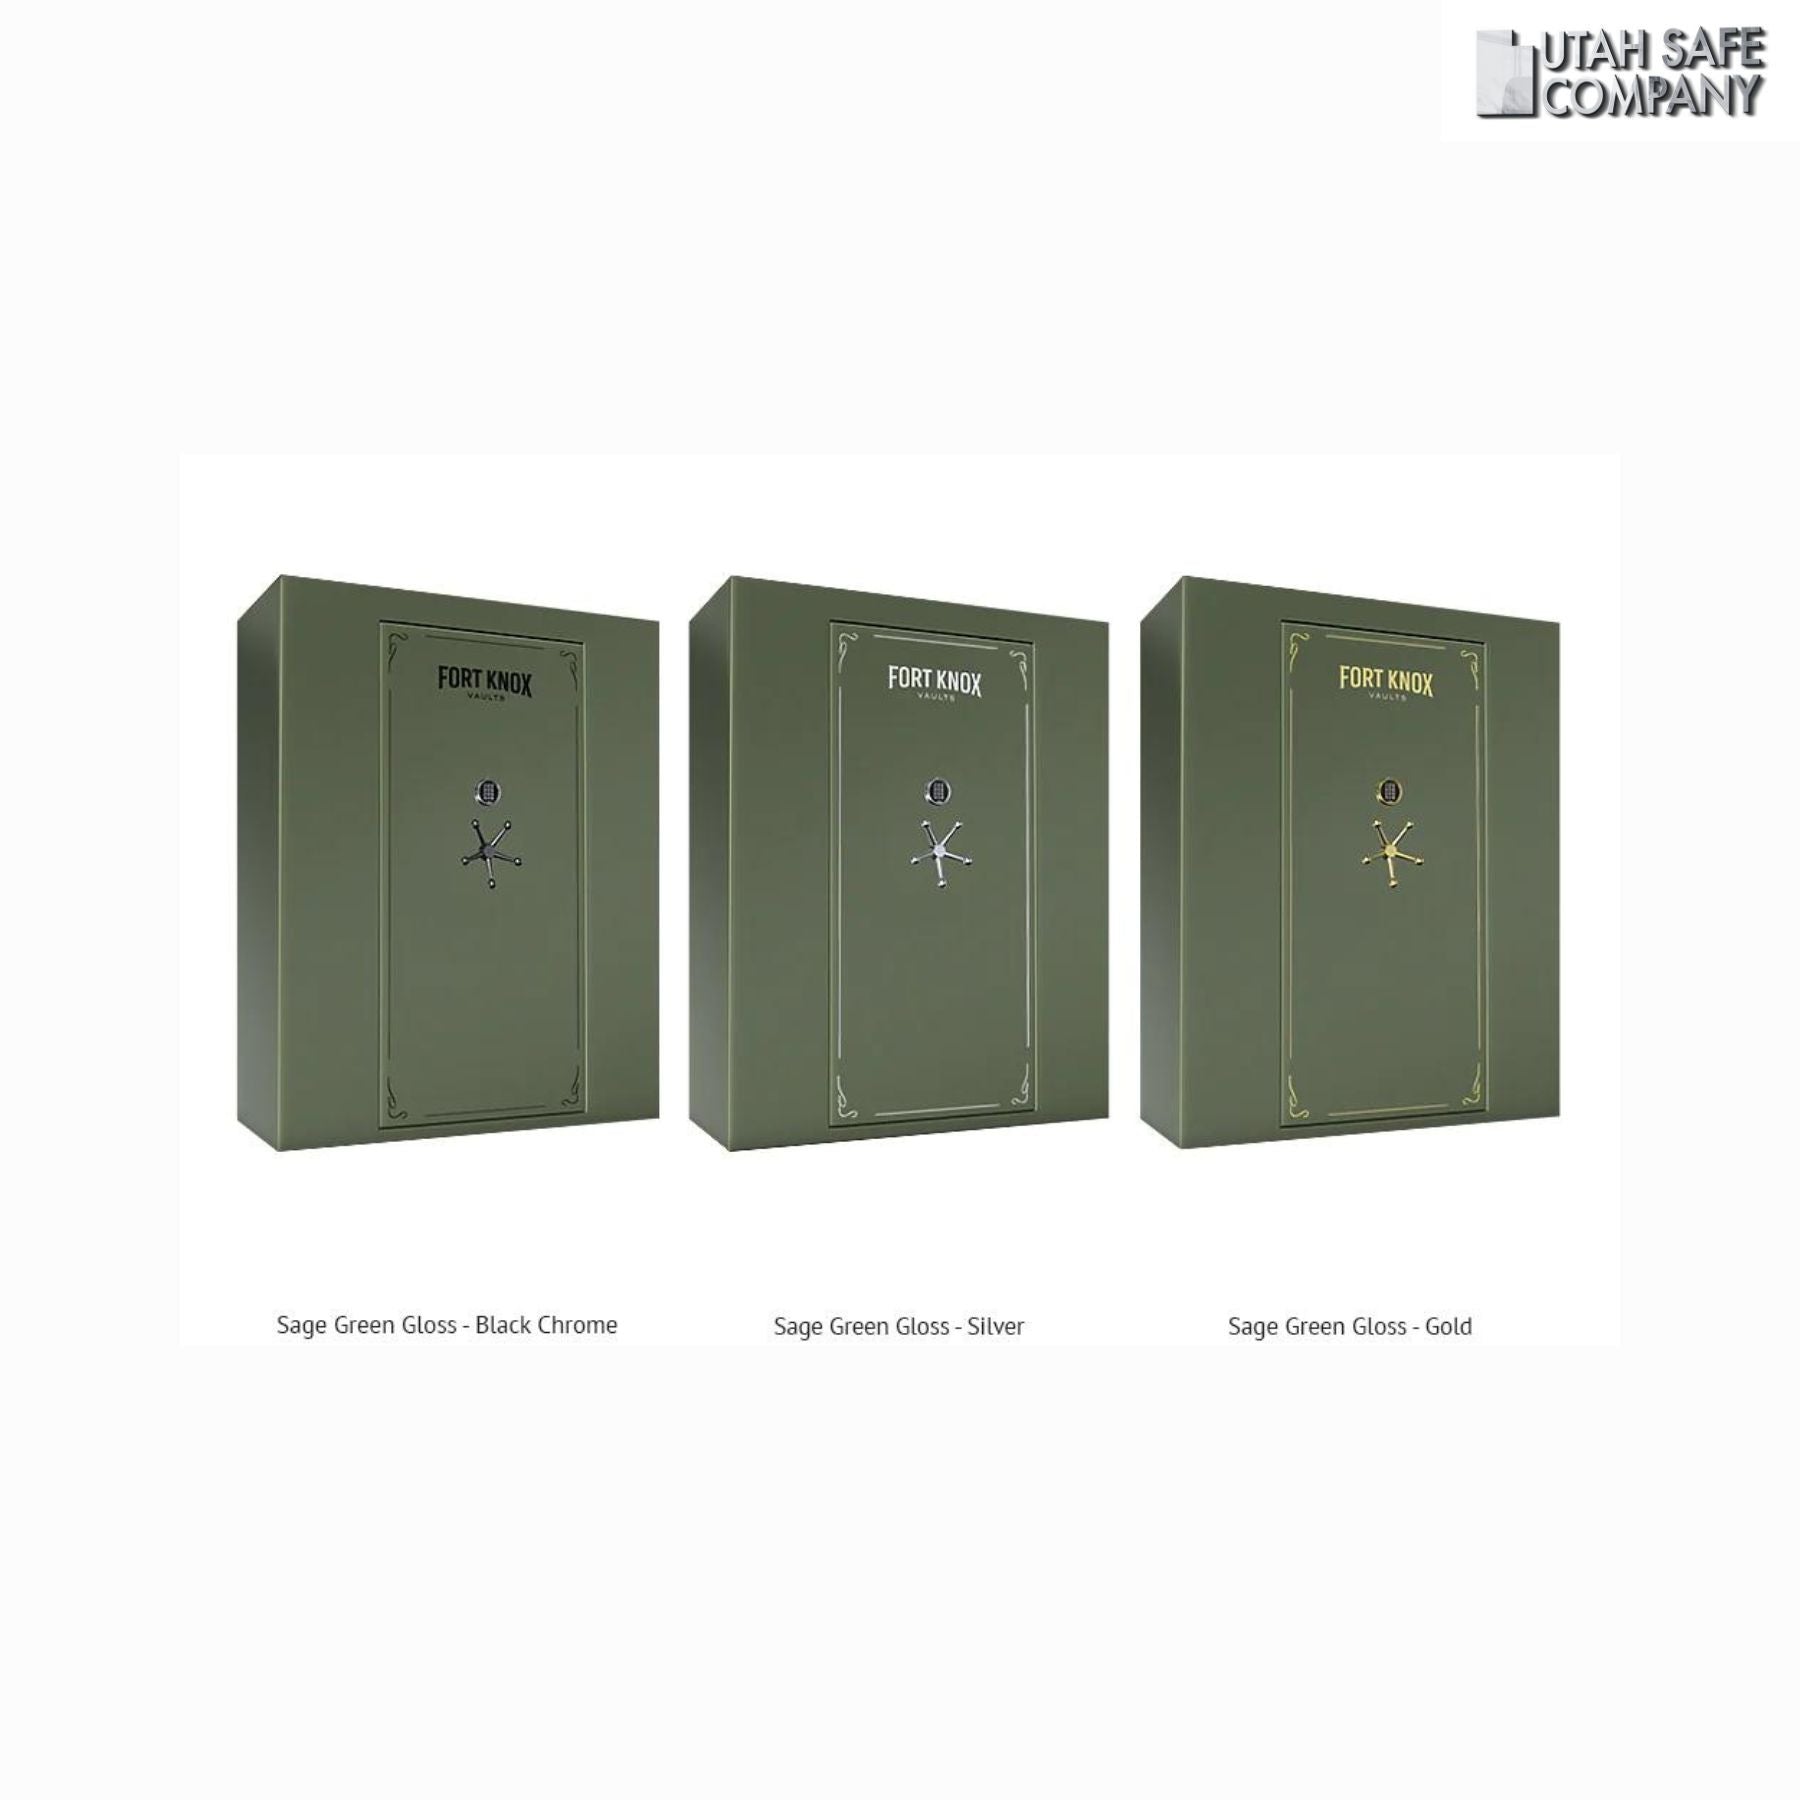 Fort Knox Titan Series 7261 Customizable Safe